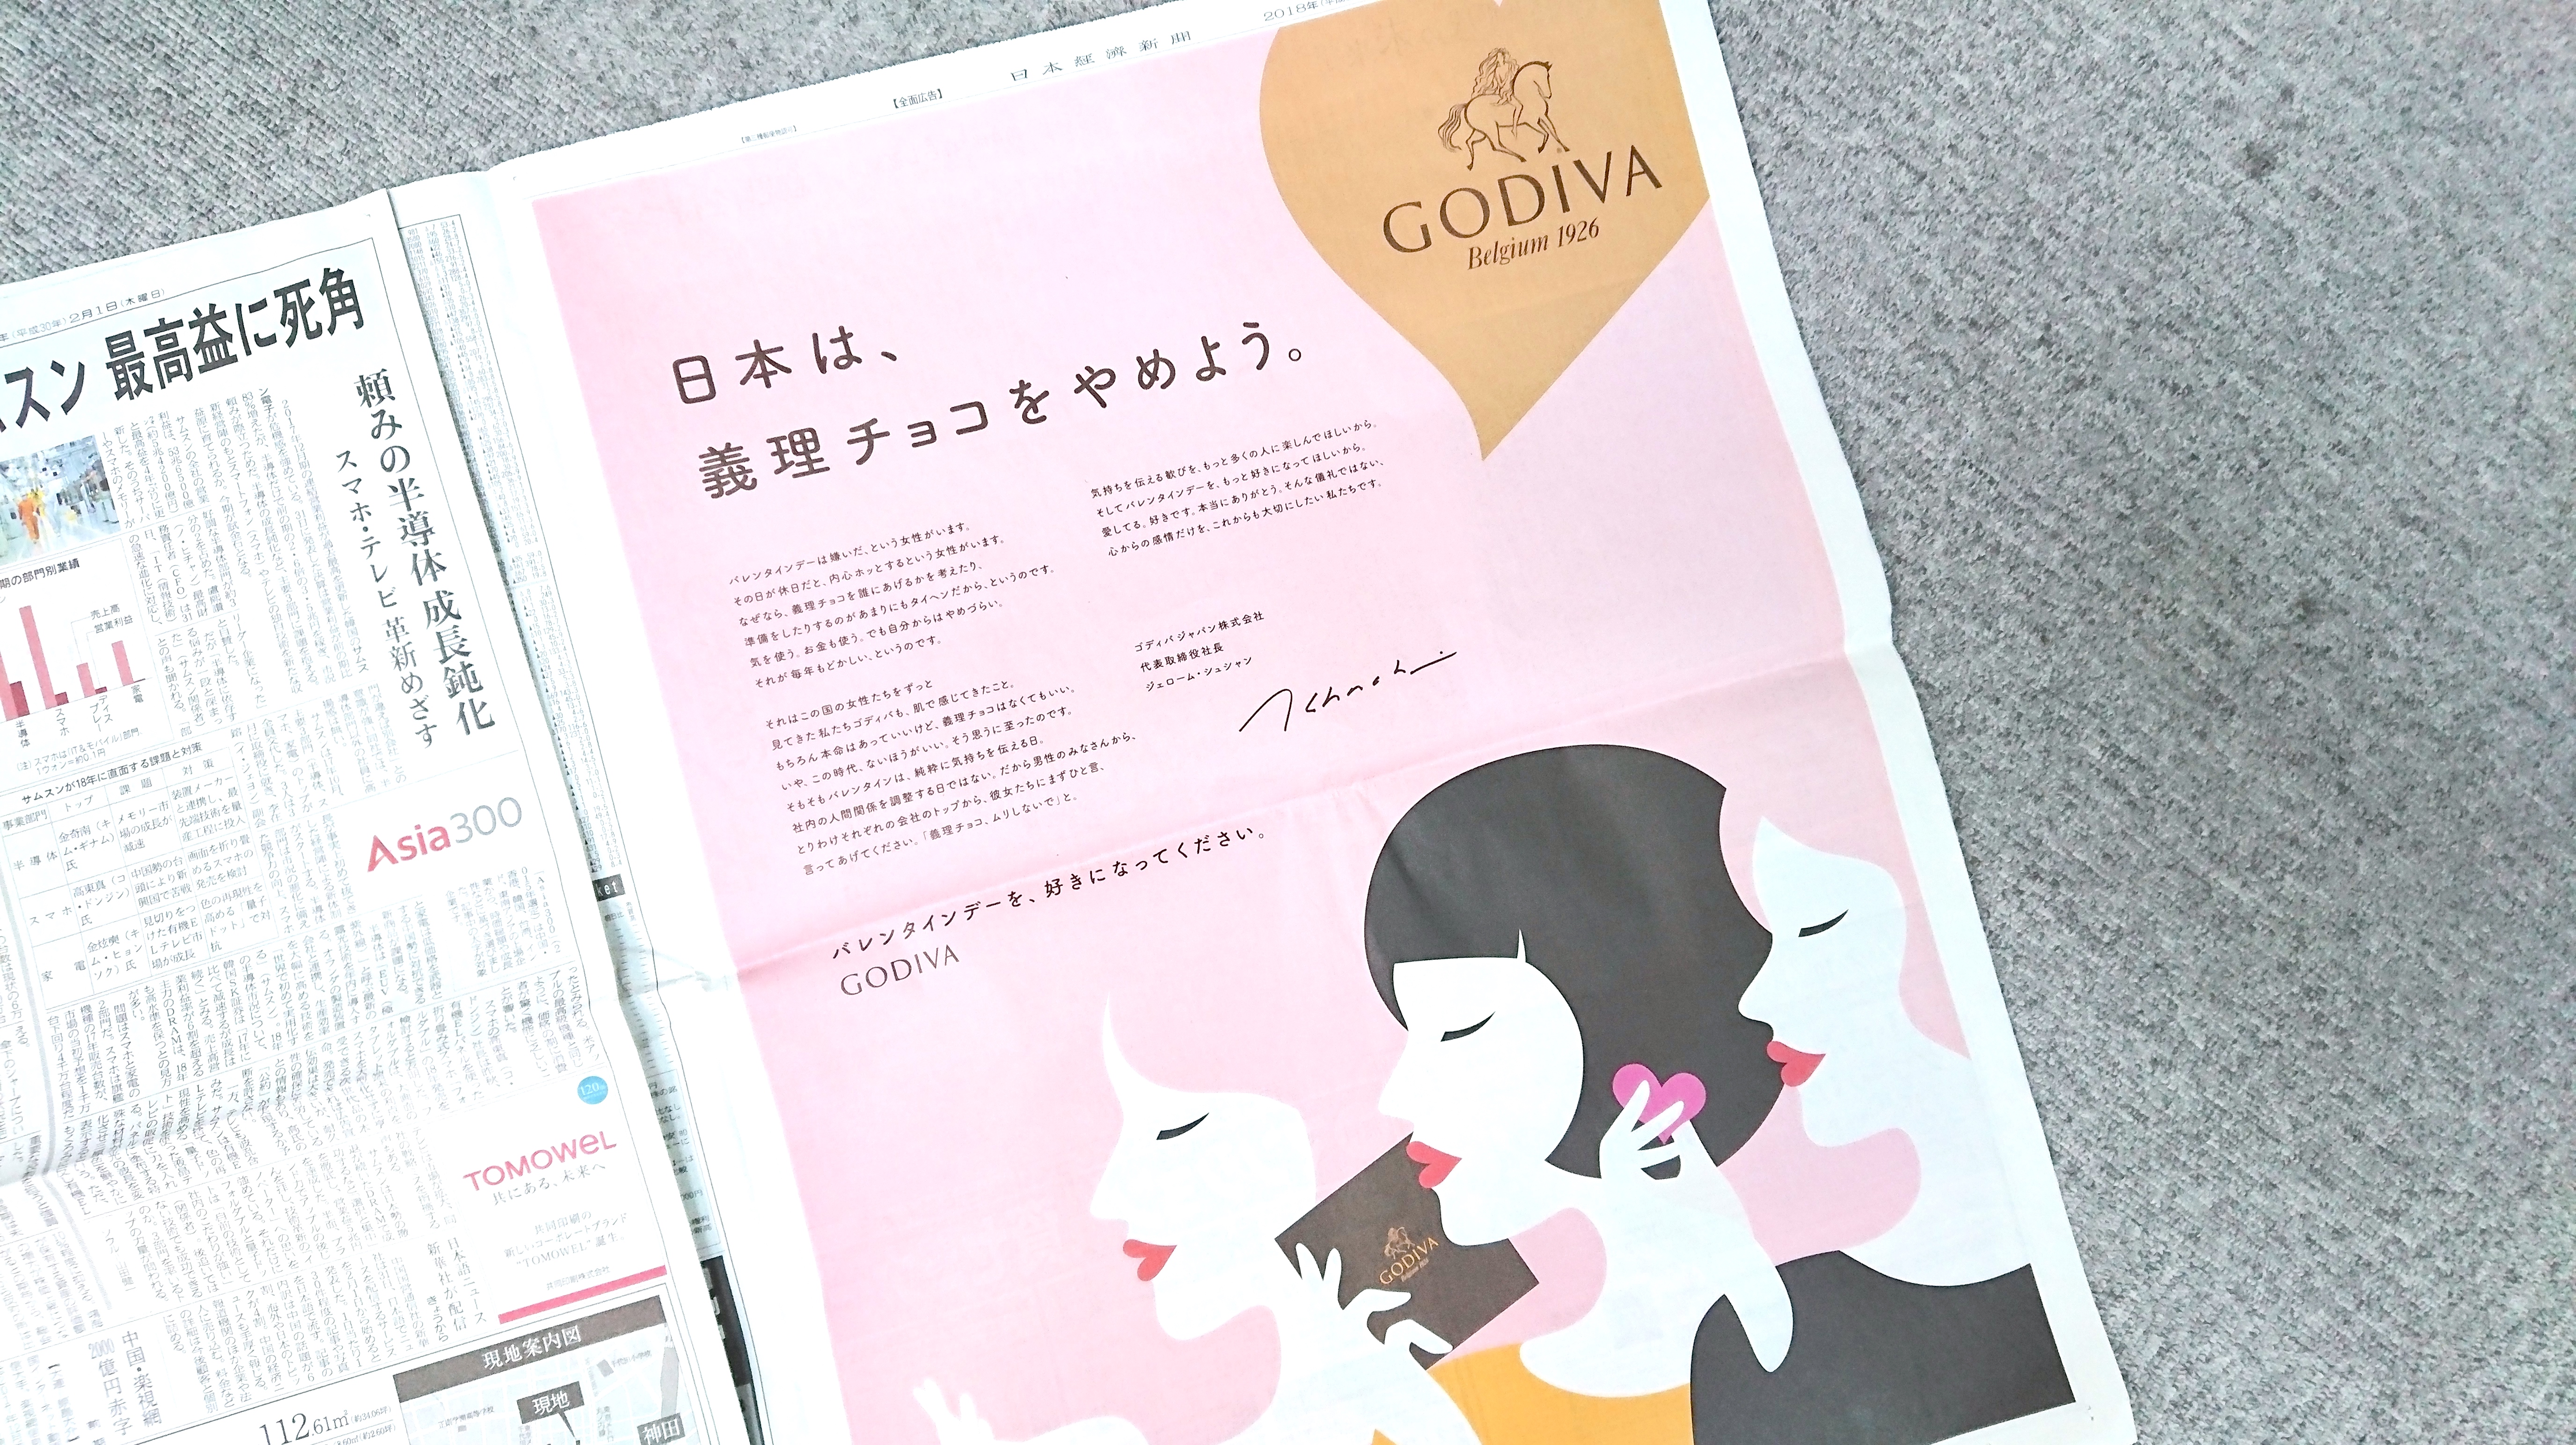 日本は 義理チョコをやめよう ゴディバジャパンの思い切った新聞広告が多くの人たちの共感を呼んでいます Pouch ポーチ